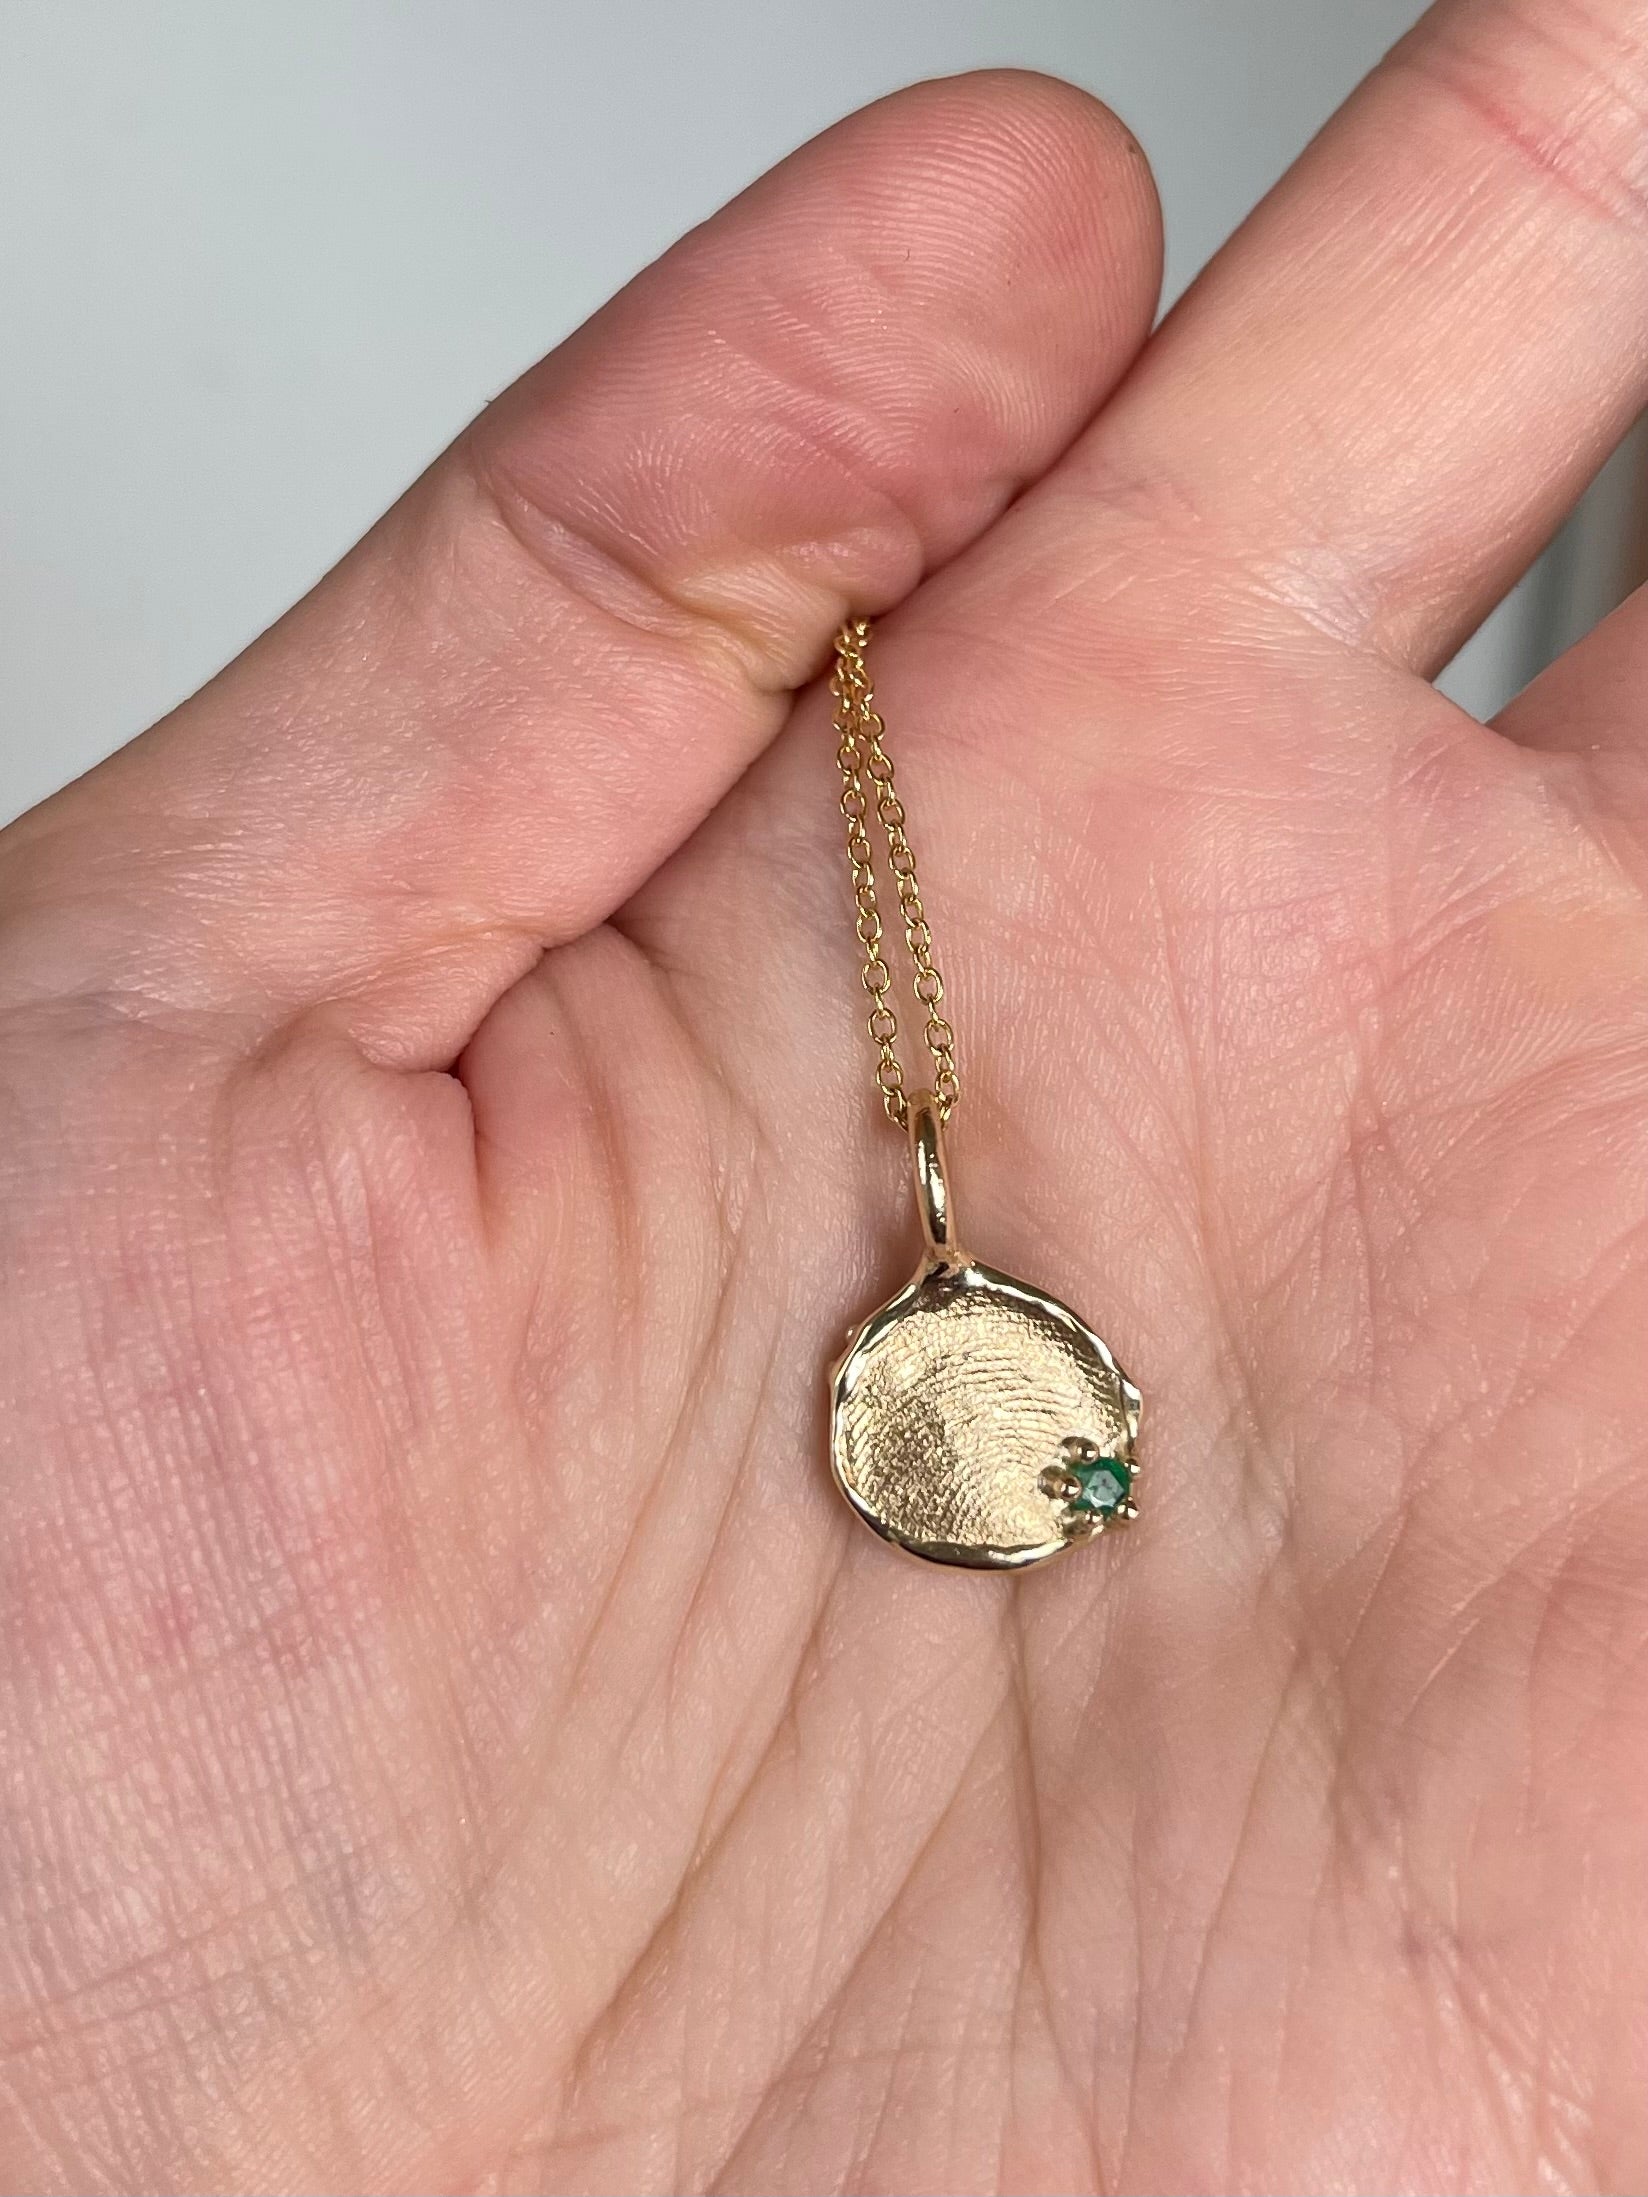 Gemstone + Fingerprint Pendant - Sterling Silver or 9ct Gold - Impression Kit + Necklace